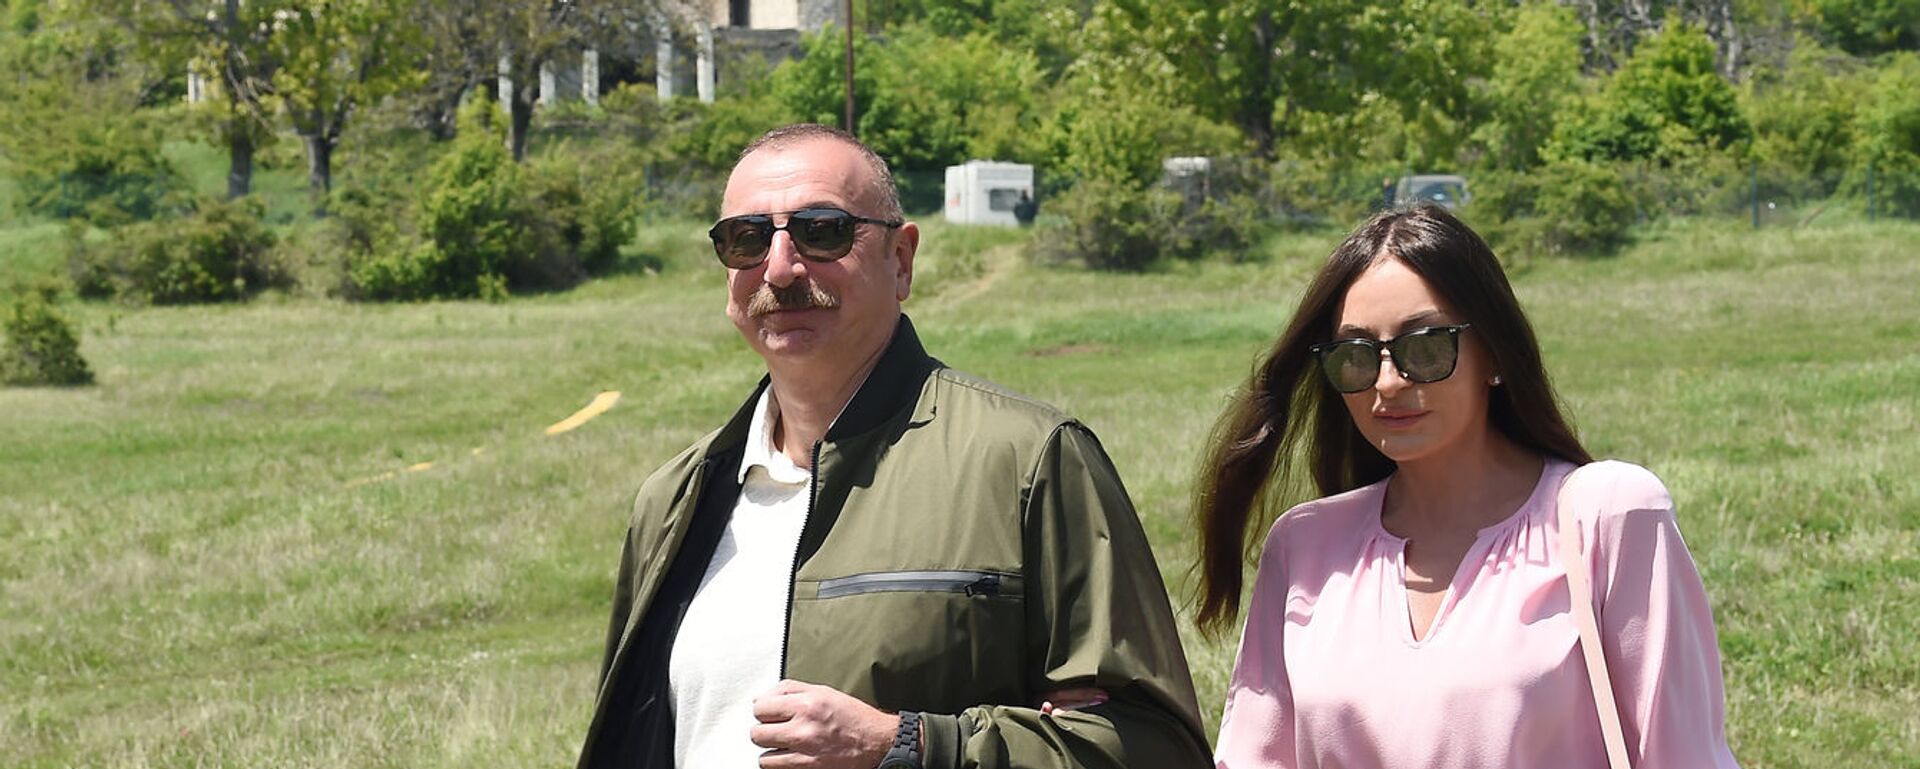 Президент Ильхам Алиев и Первая леди Мехрибан Алиева в Шуше - Sputnik Азербайджан, 1920, 24.12.2021